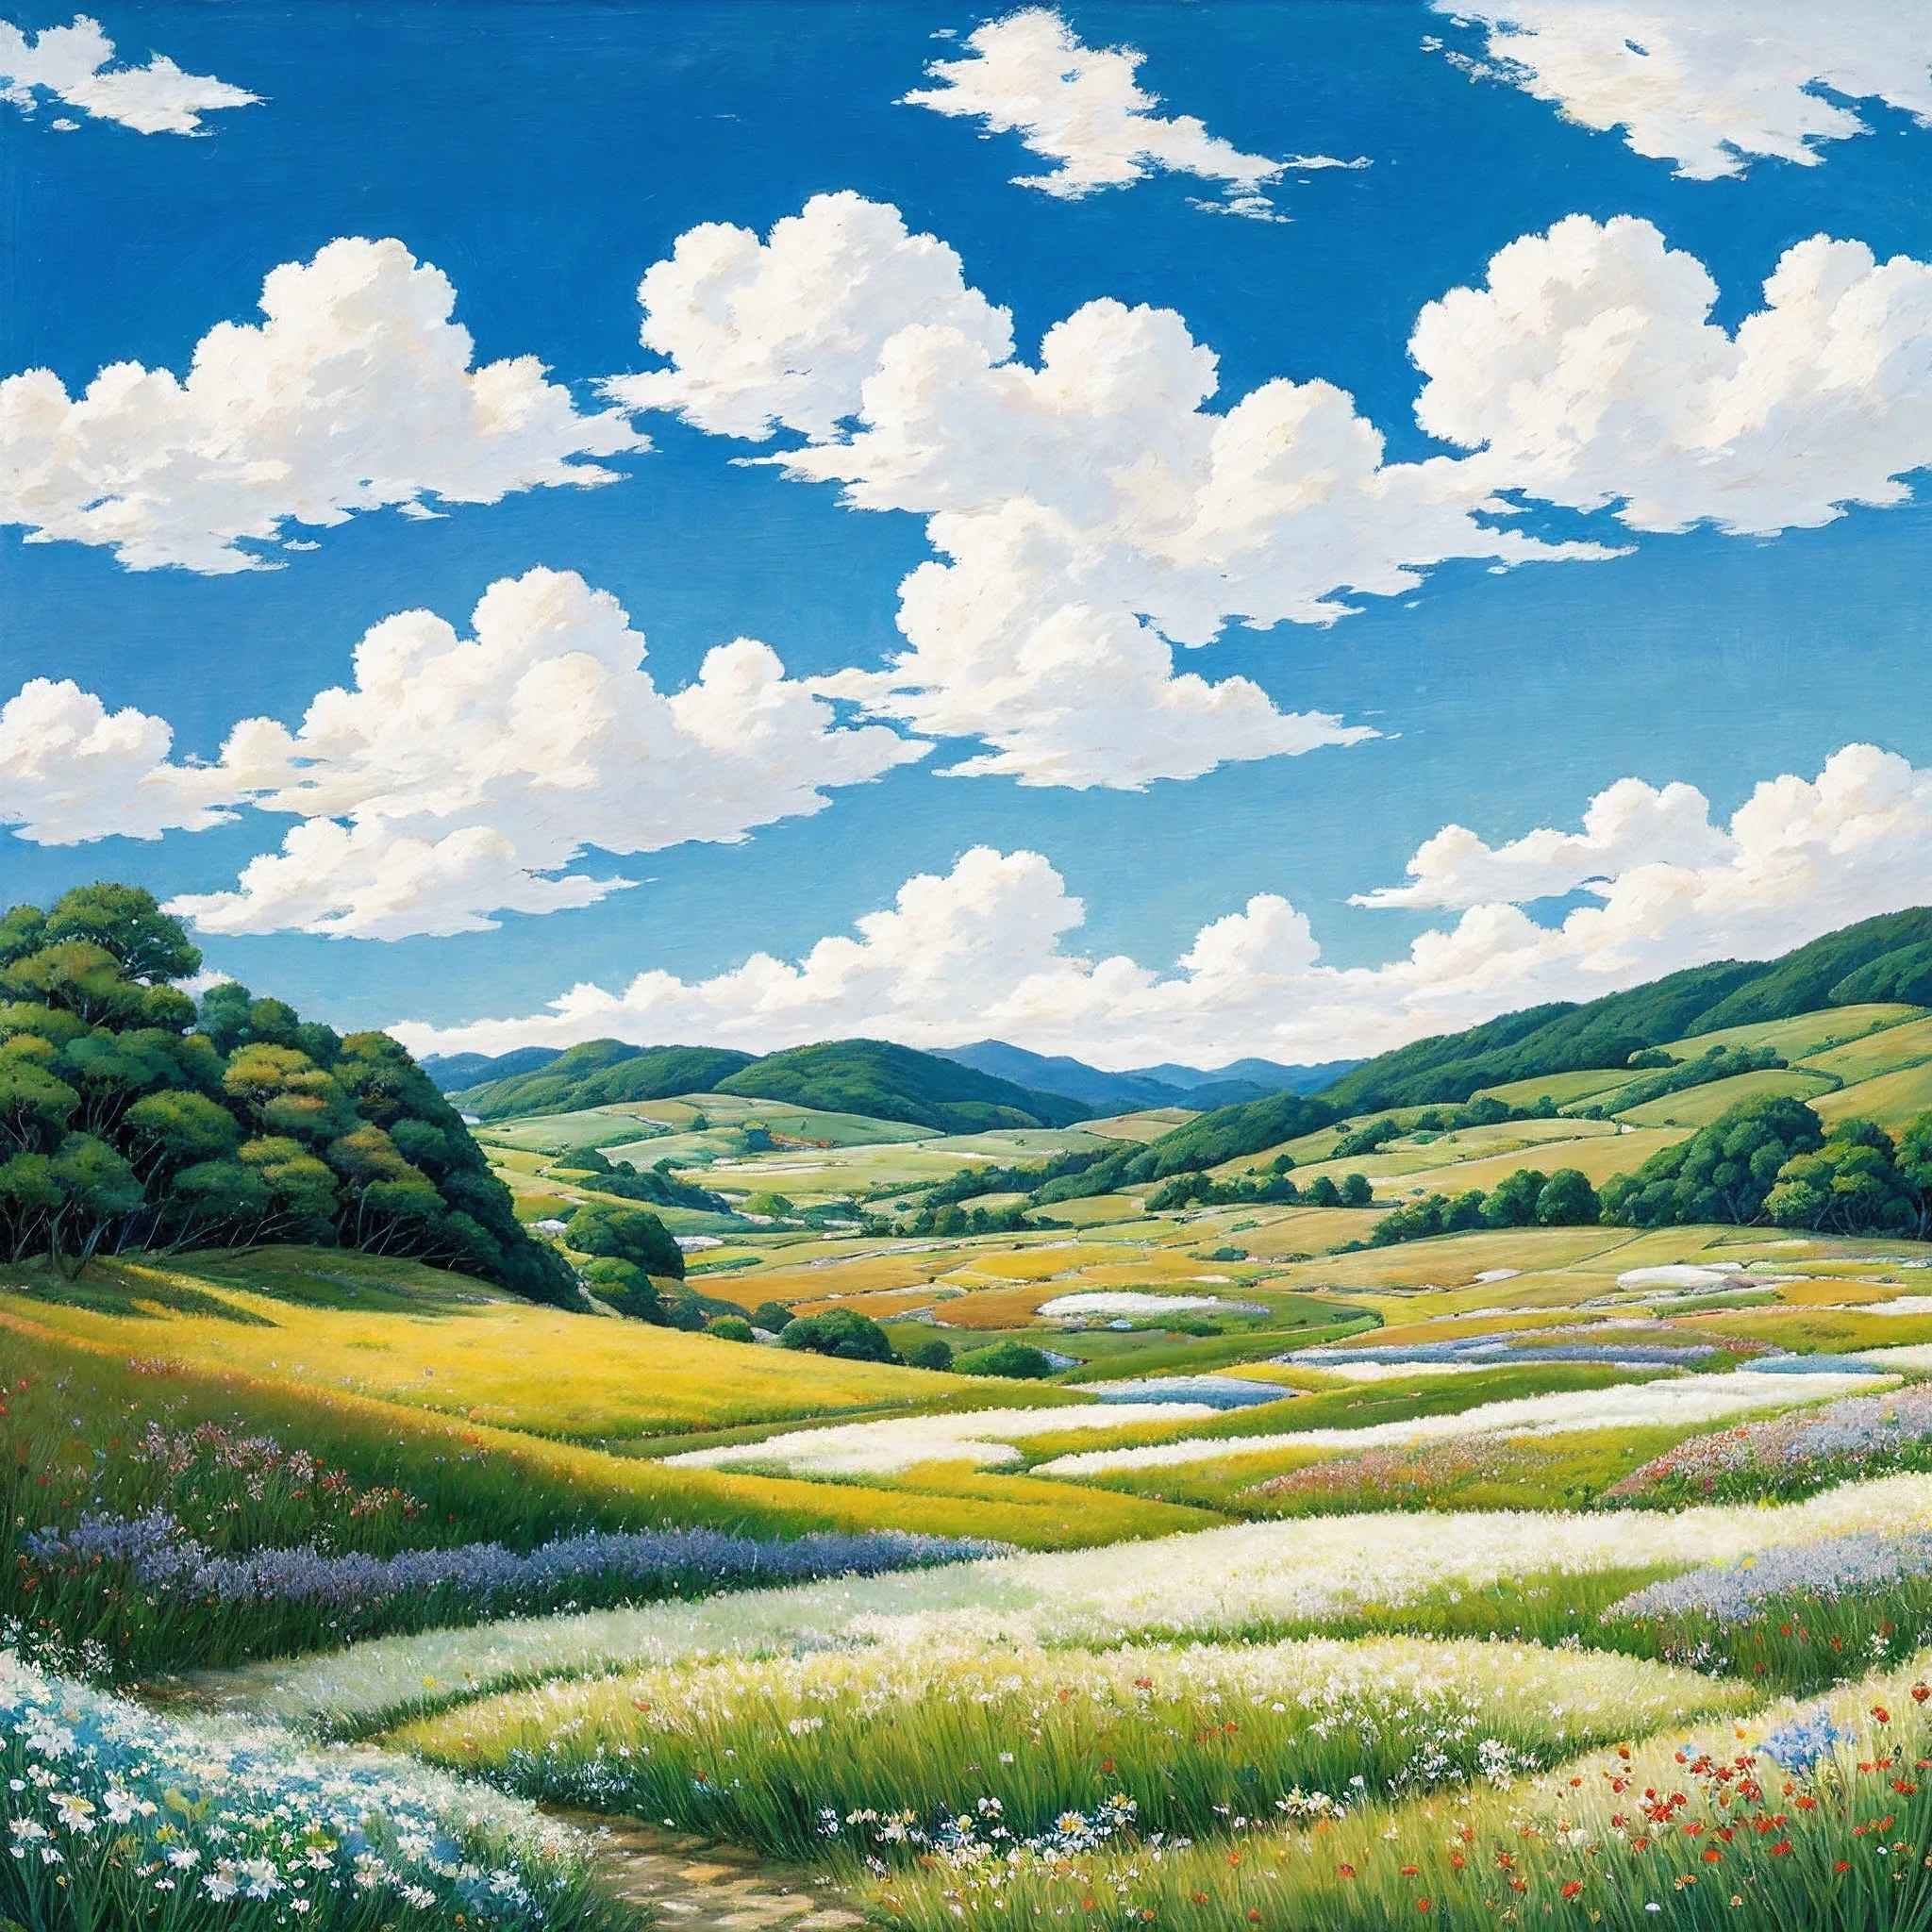 Réaliste, Authentique, belle et étonnante peinture à l&#39;huile de paysage Studio Ghibli Hayao Miyazaki&#39;Prairie de pétales avec ciel bleu et nuages blancs